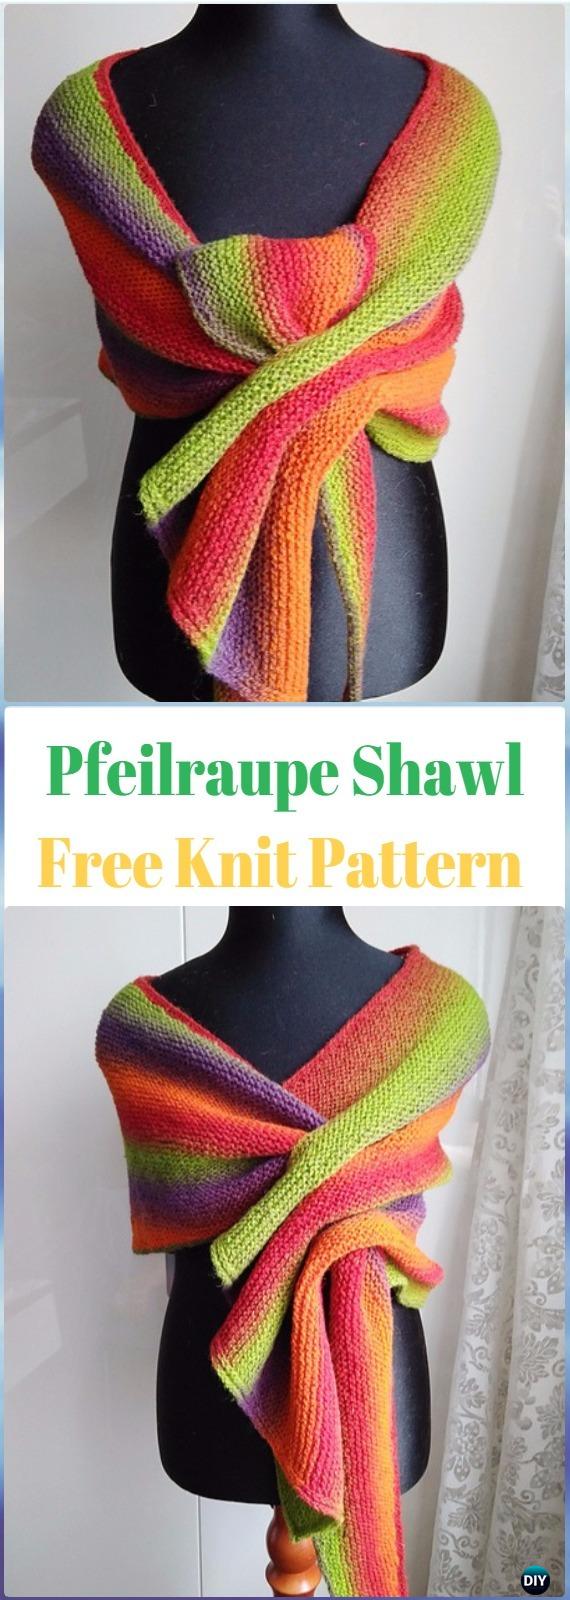 Knit Pfeilraupe Shawl Free Pattern - Knit Scarf & Wrap Shawl Patterns